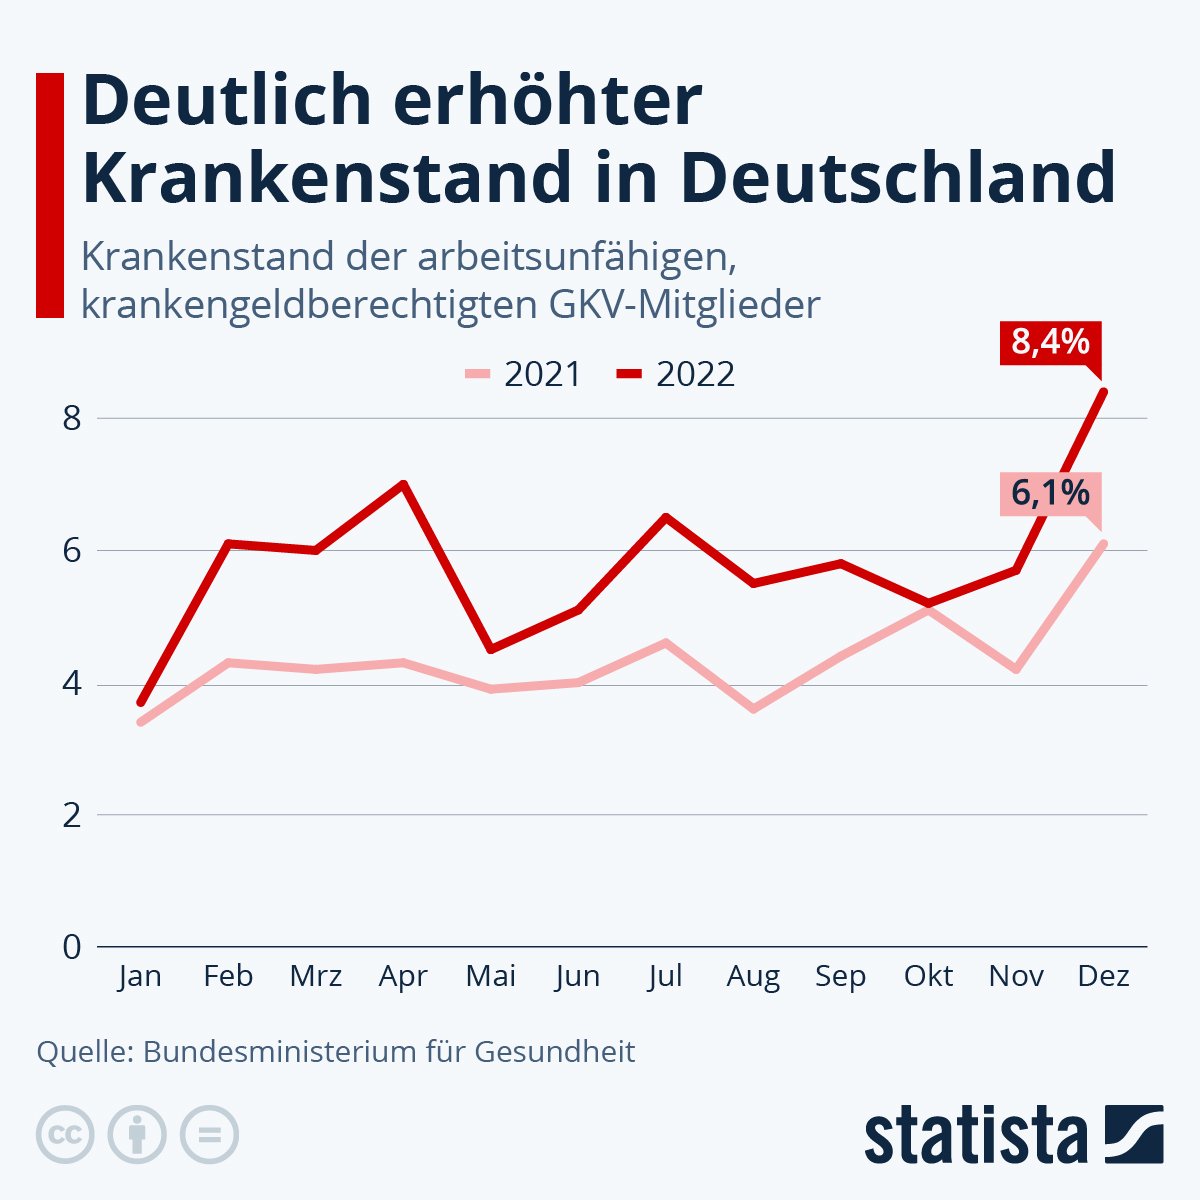 Seit der “Impfung” gibt es einen deutlich erhöhten Krankenstand in Deutschland